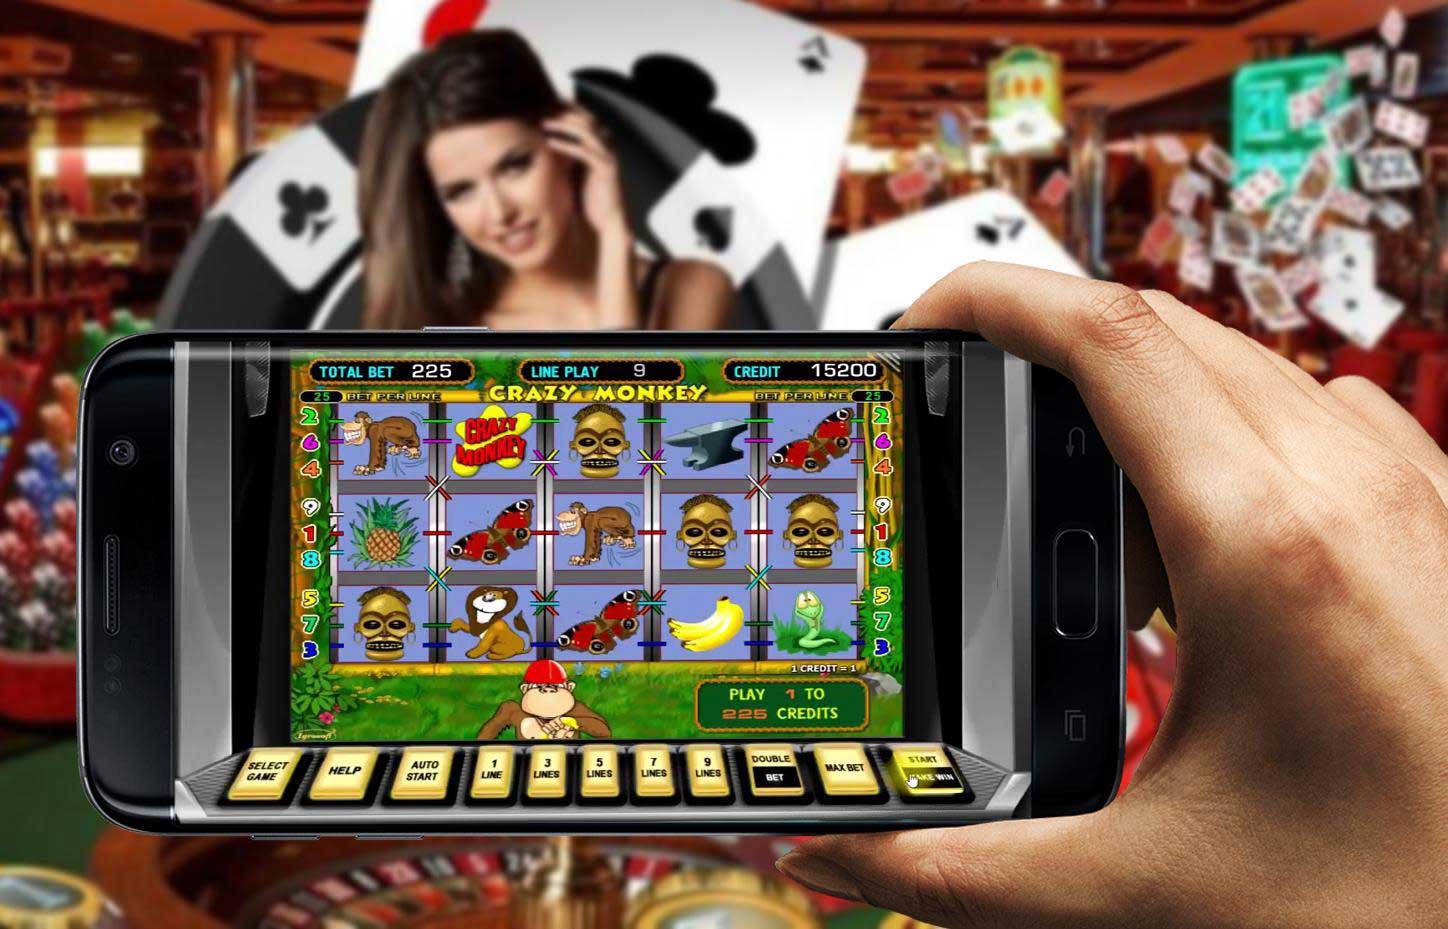 Device worthiest casino apps как ввести код из смс в столото